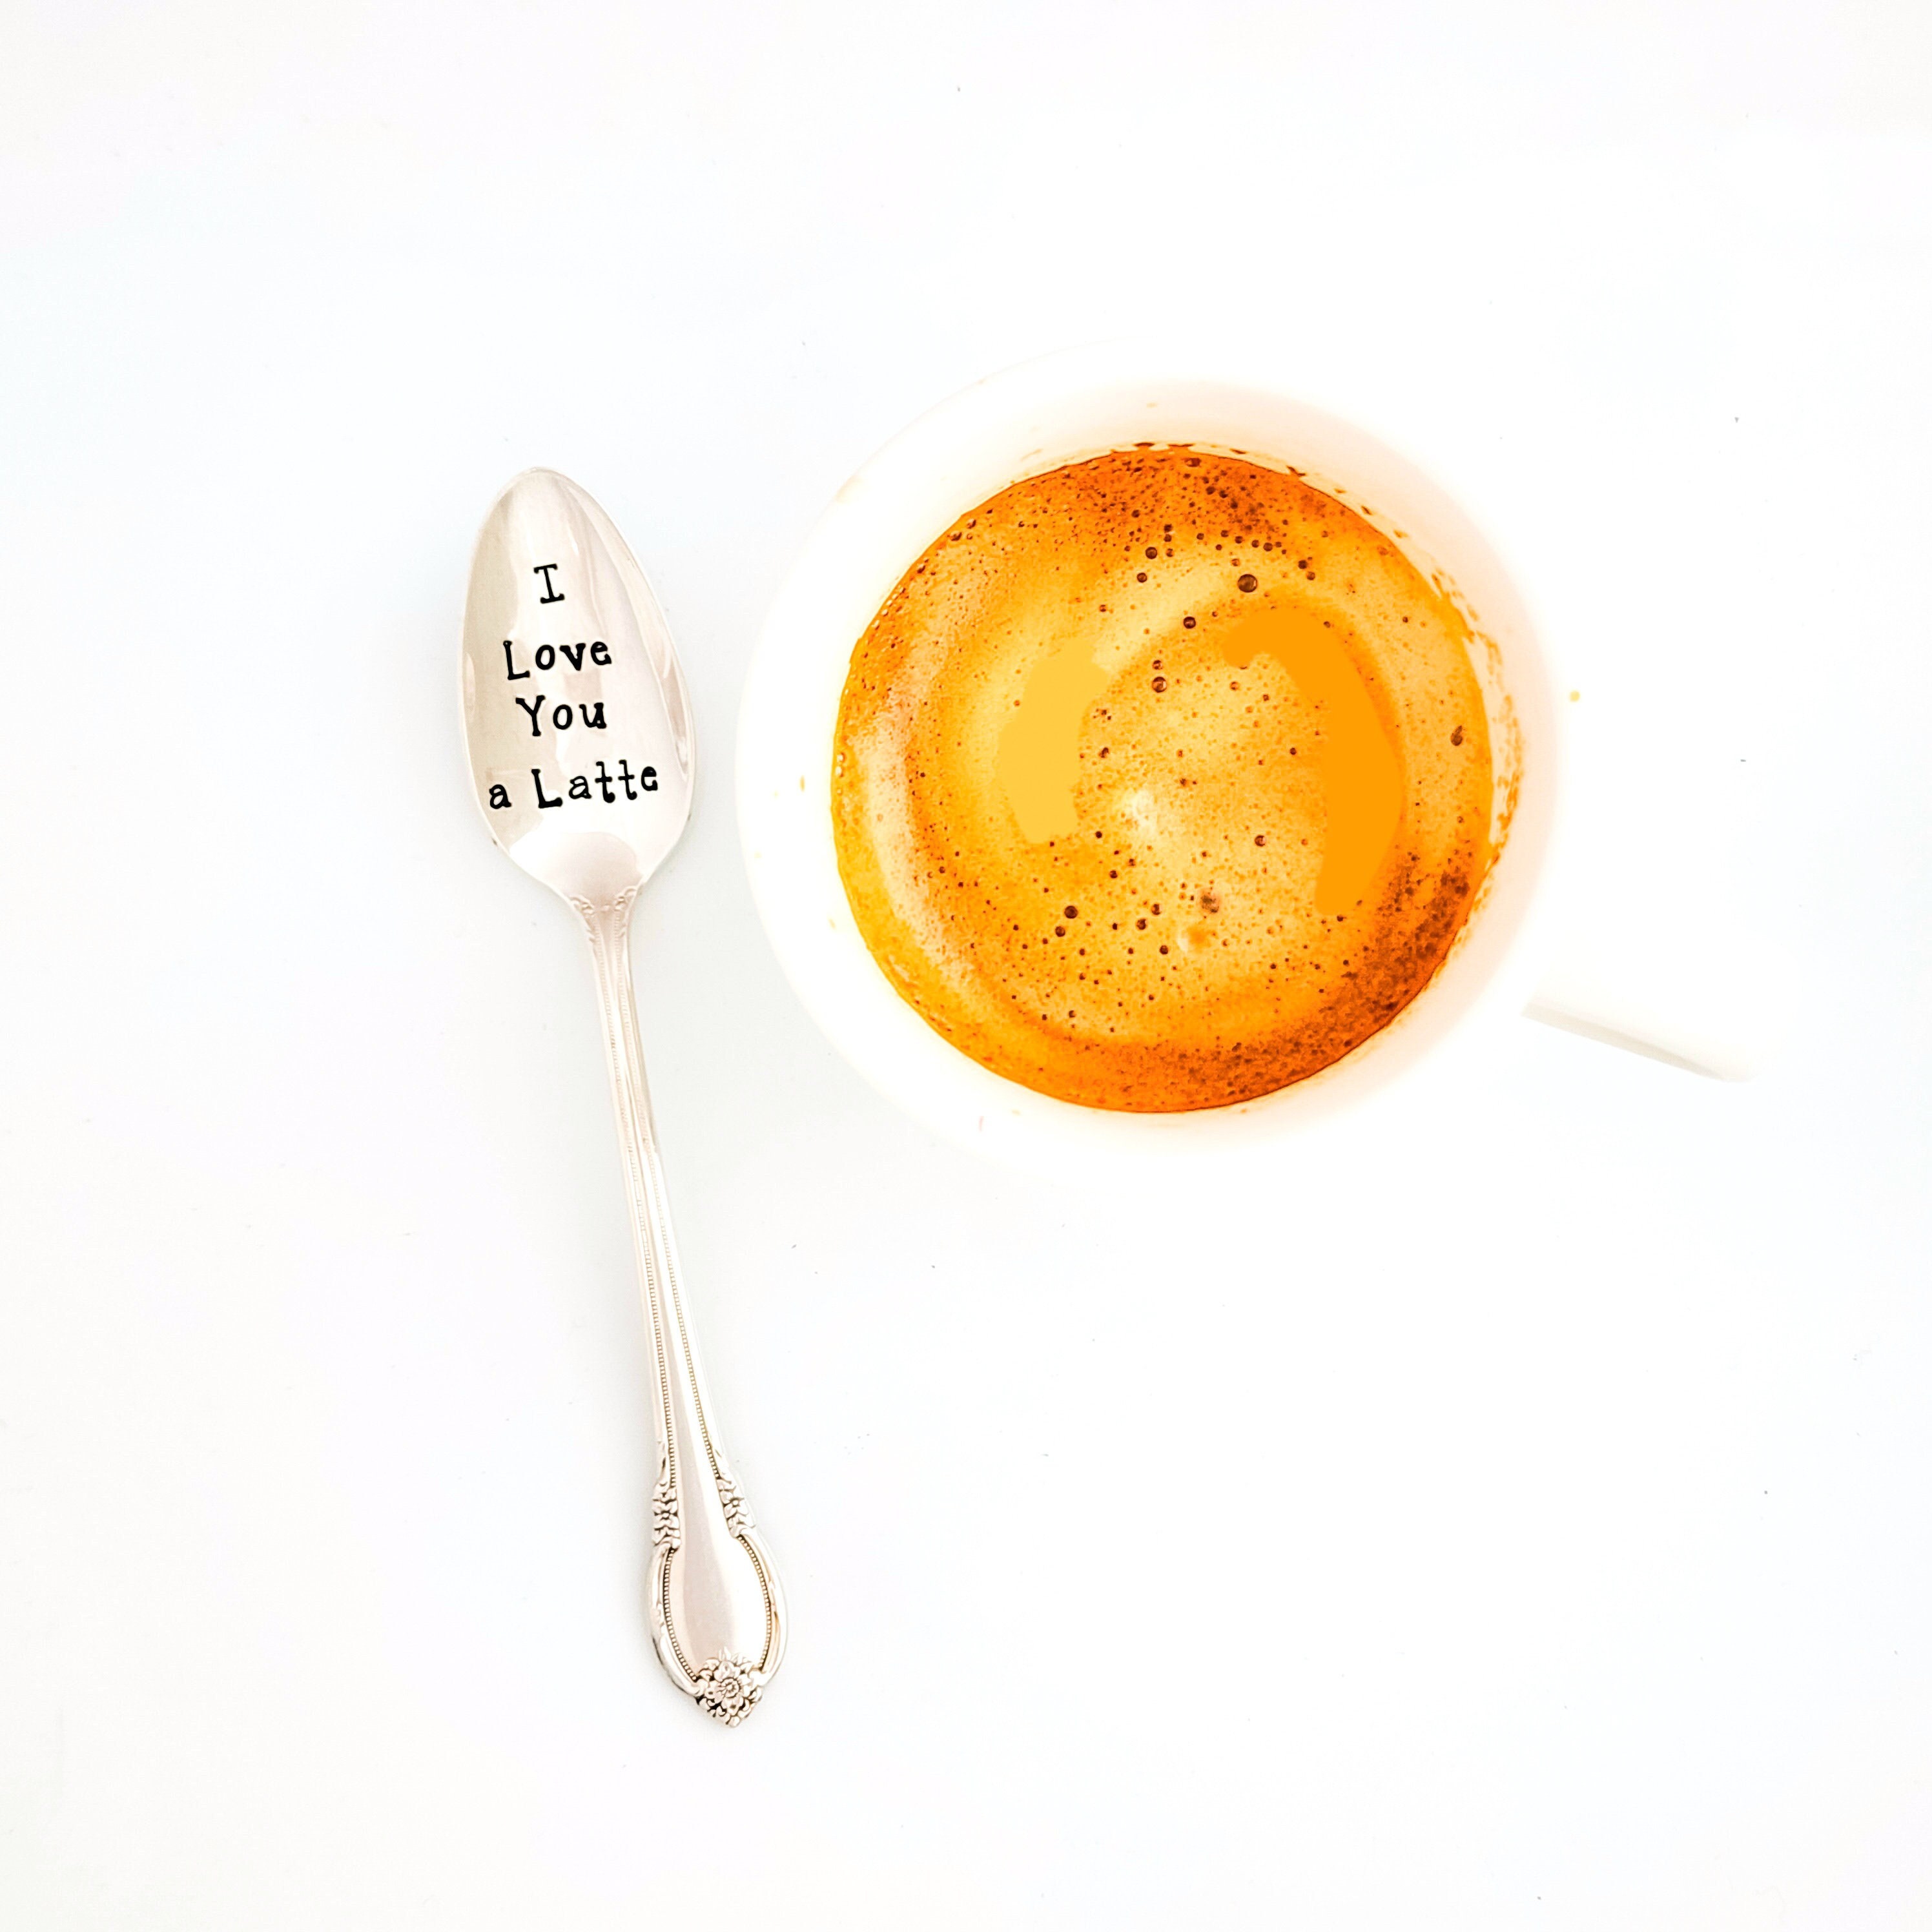 Vintage Coffee Espresso Spoons for Sugar Dessert Carved Floral